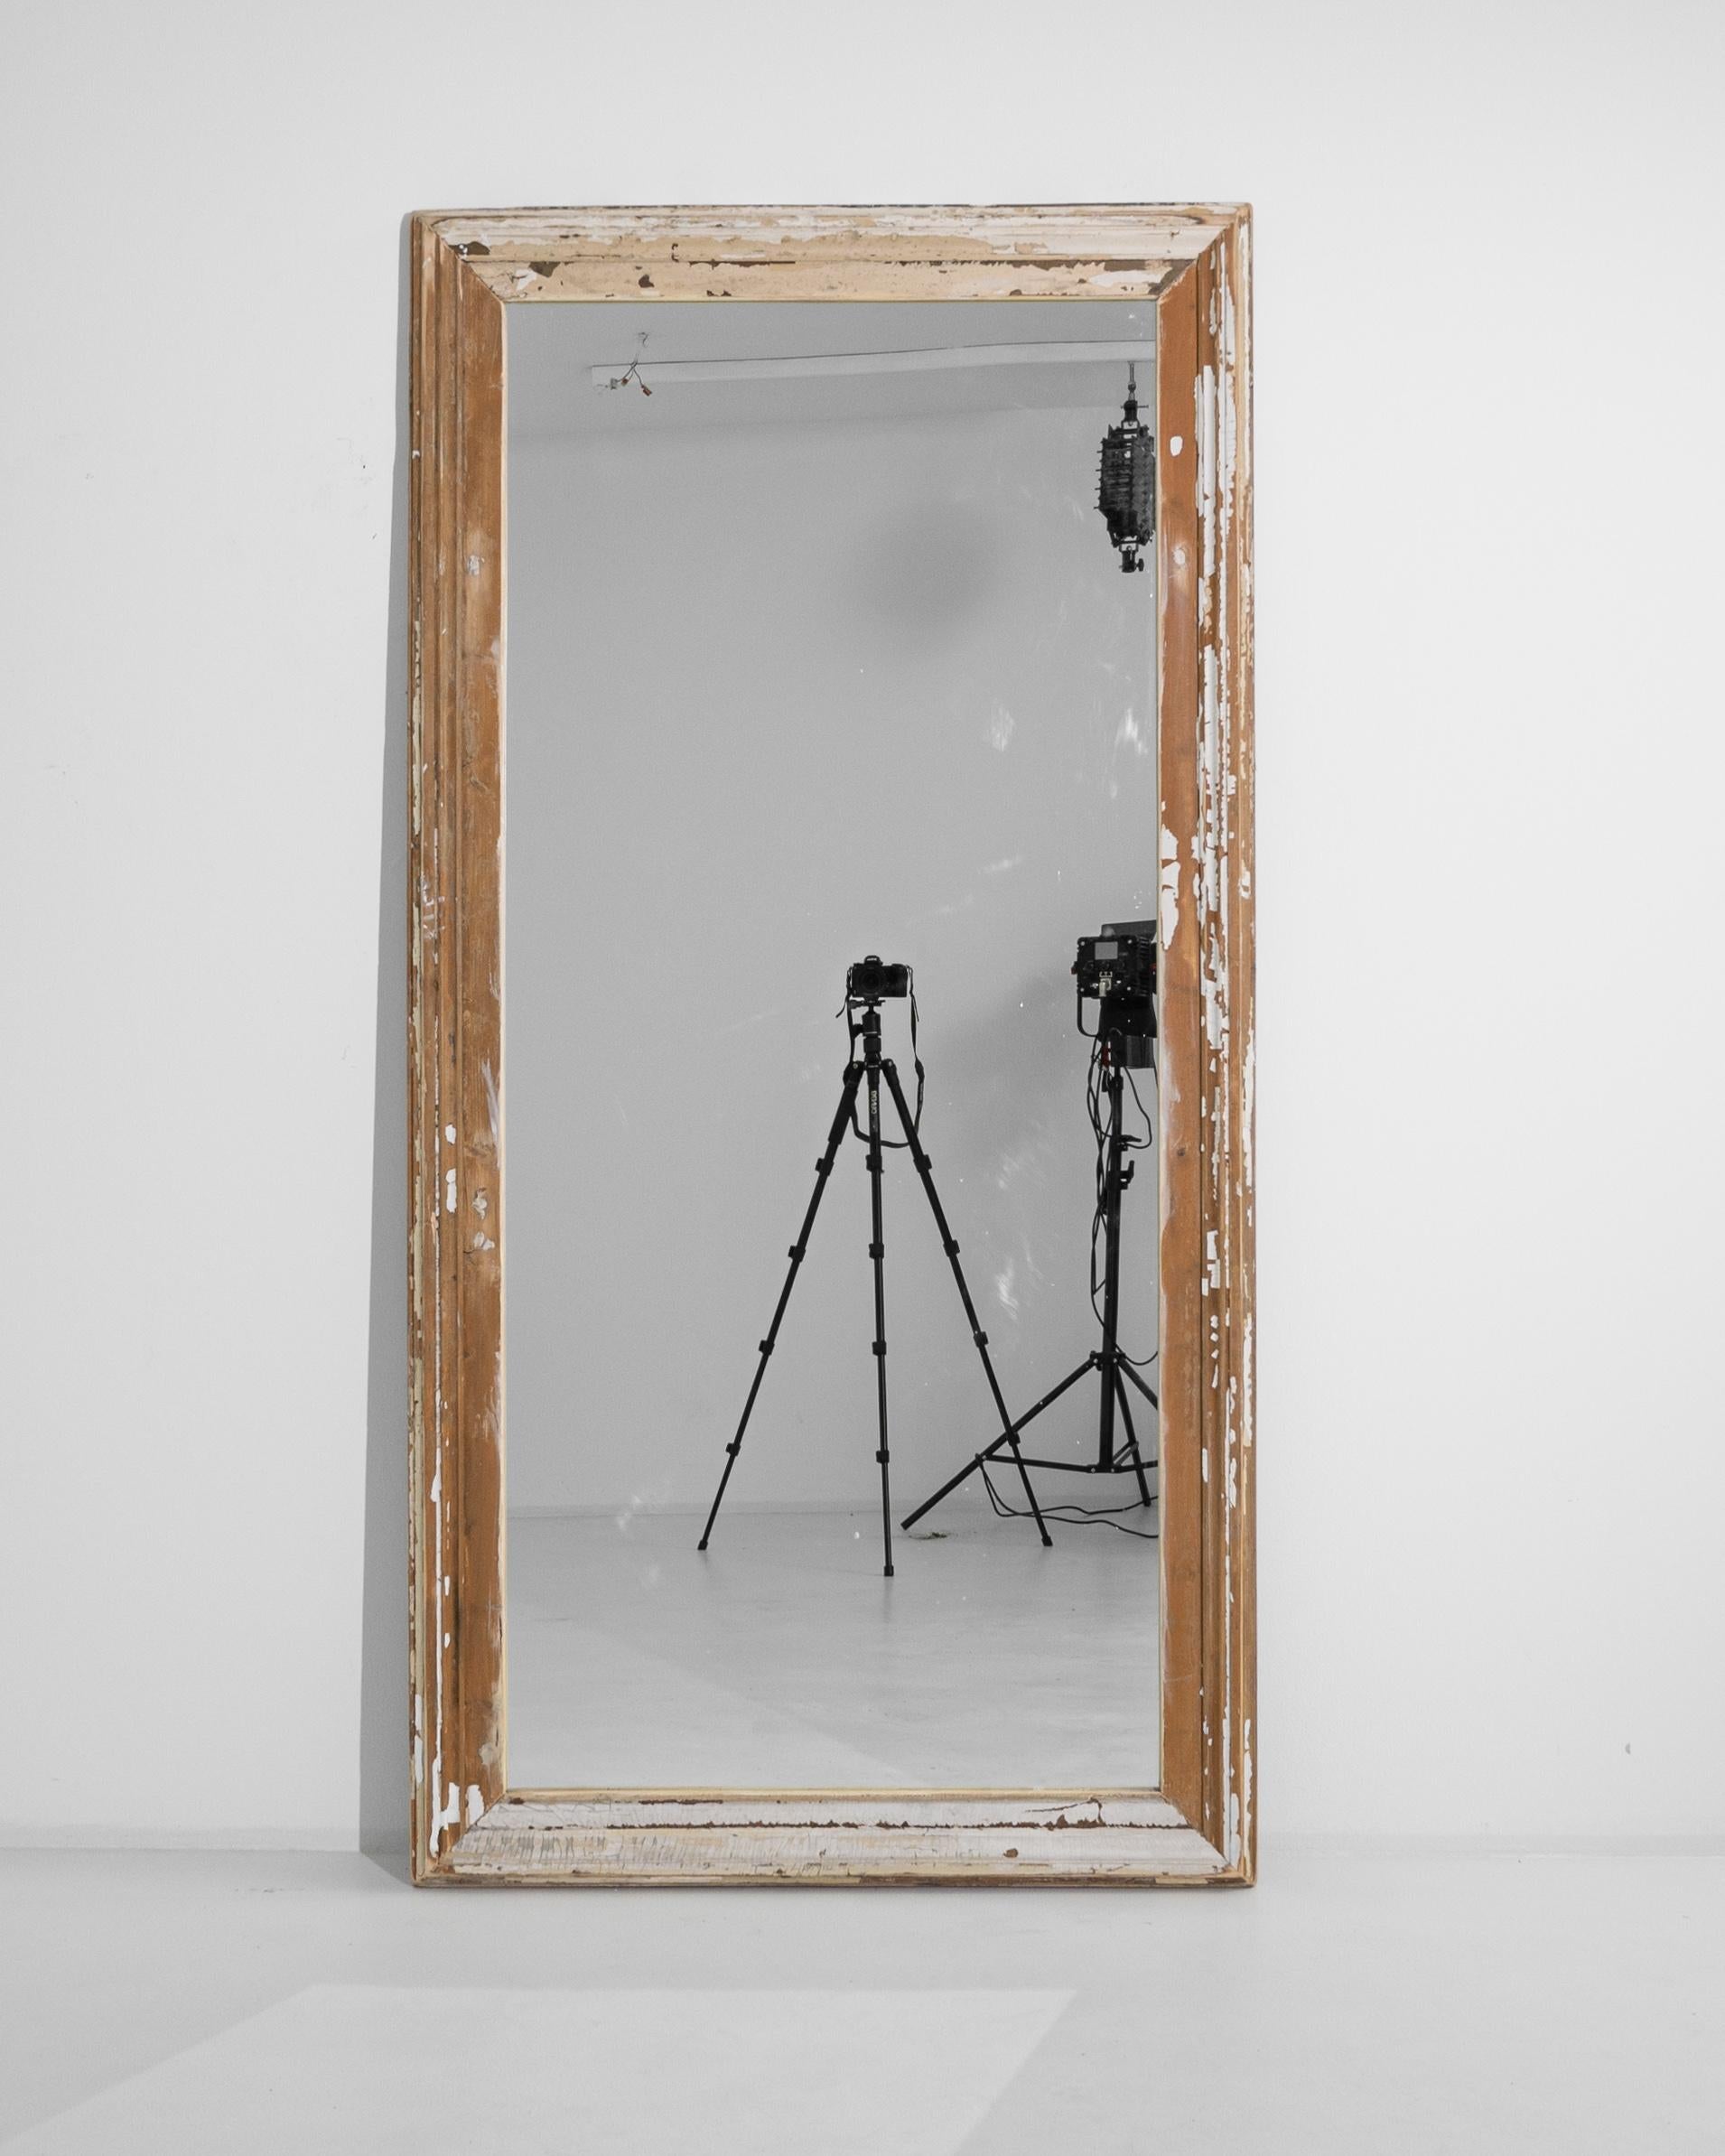 Ce miroir en bois français des années 1900 dégage un attrait shabby chic qui apporte avec lui un sentiment d'élégance rustique. La patine blanche du cadre, portant la douce caresse du temps, raconte sa propre histoire à travers chaque éclat et